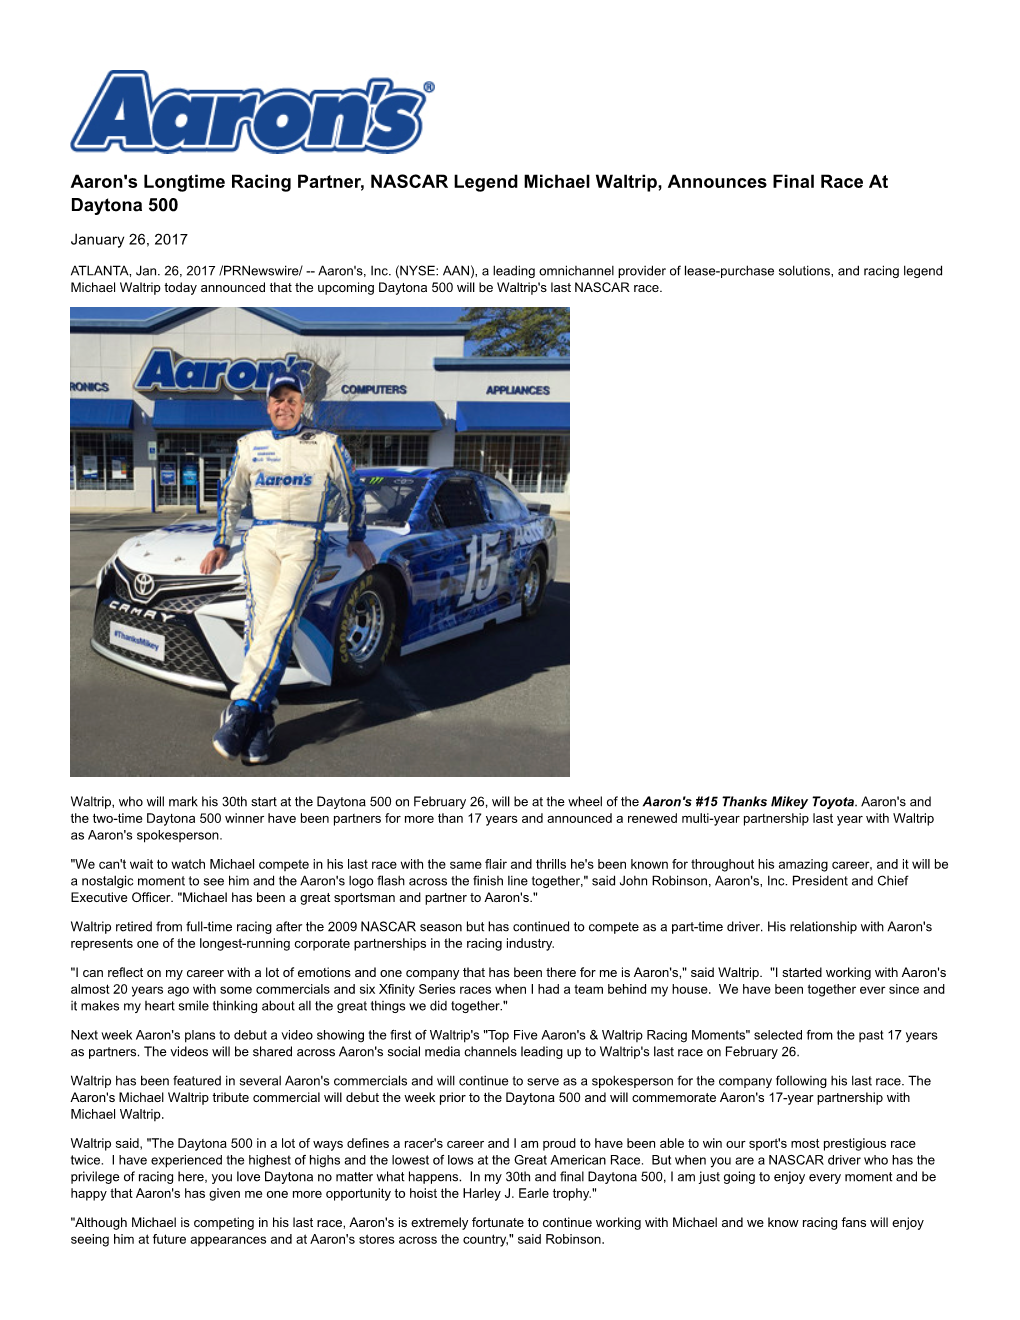 Aaron's Longtime Racing Partner, NASCAR Legend Michael Waltrip, Announces Final Race at Daytona 500